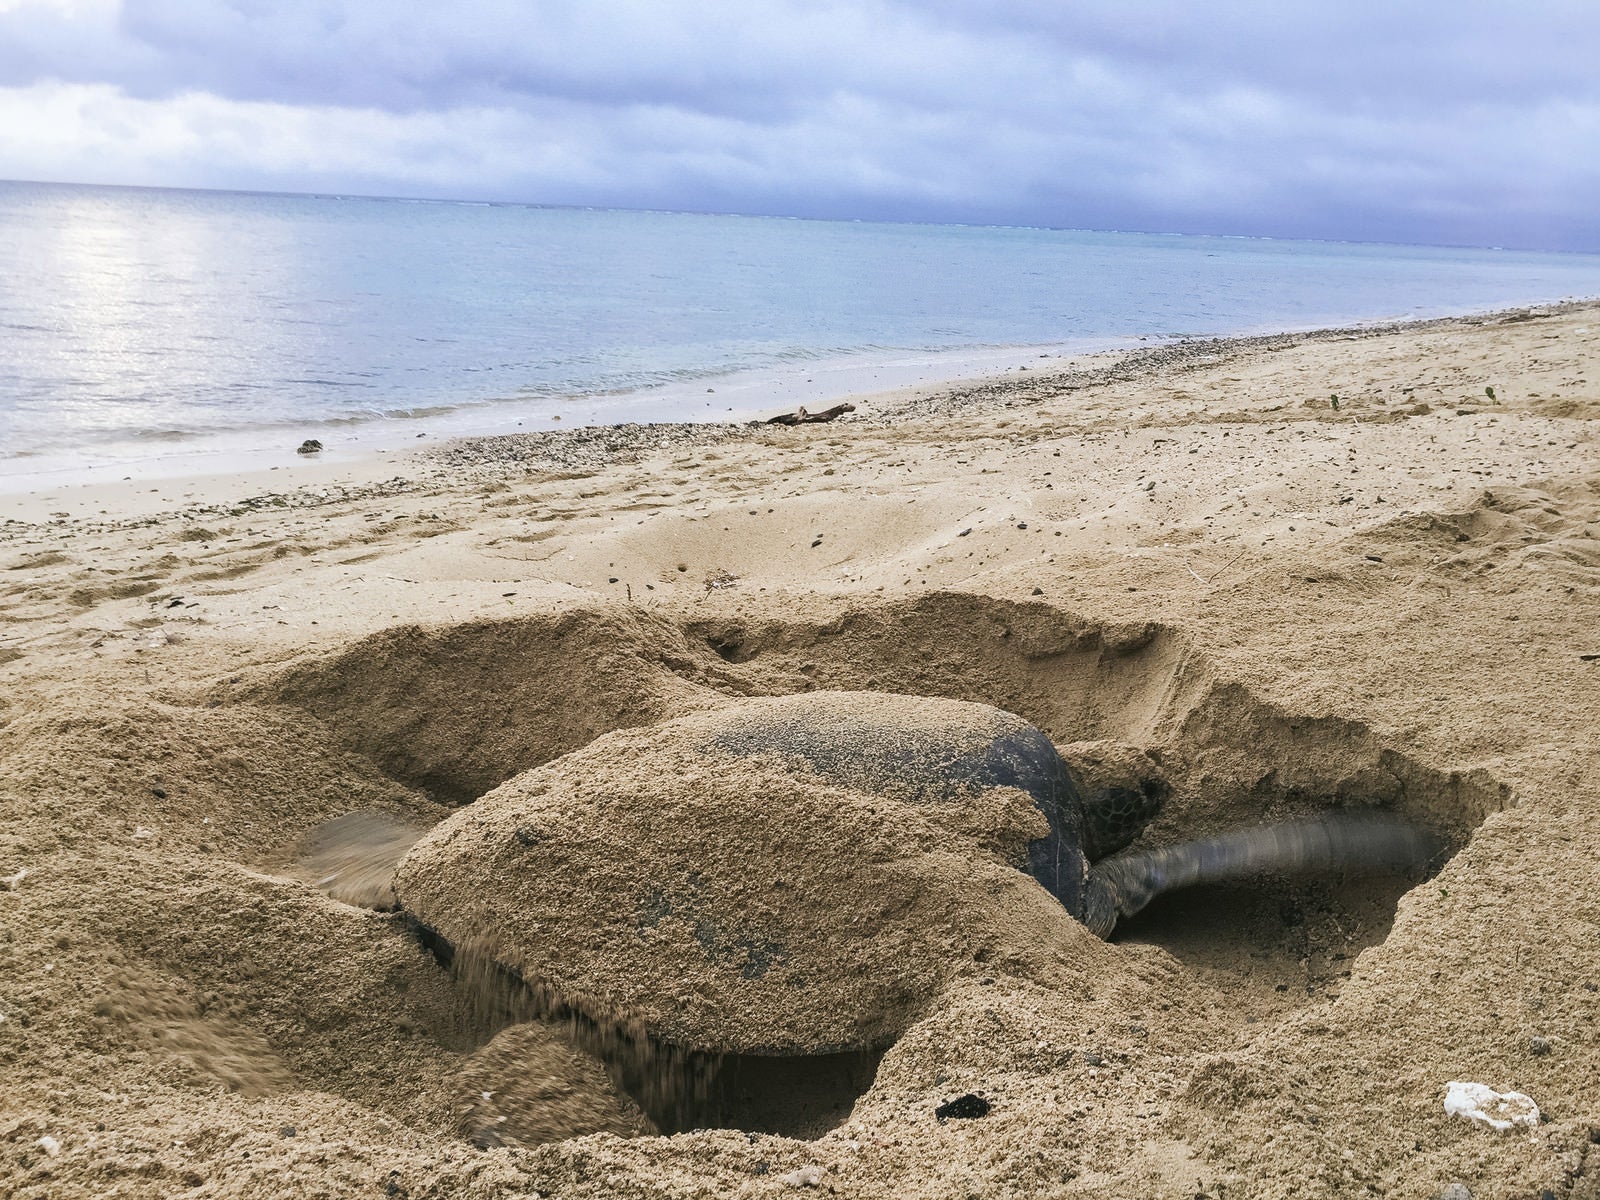 「砂浜で産卵場所を掘る大きなウミガメ」の写真